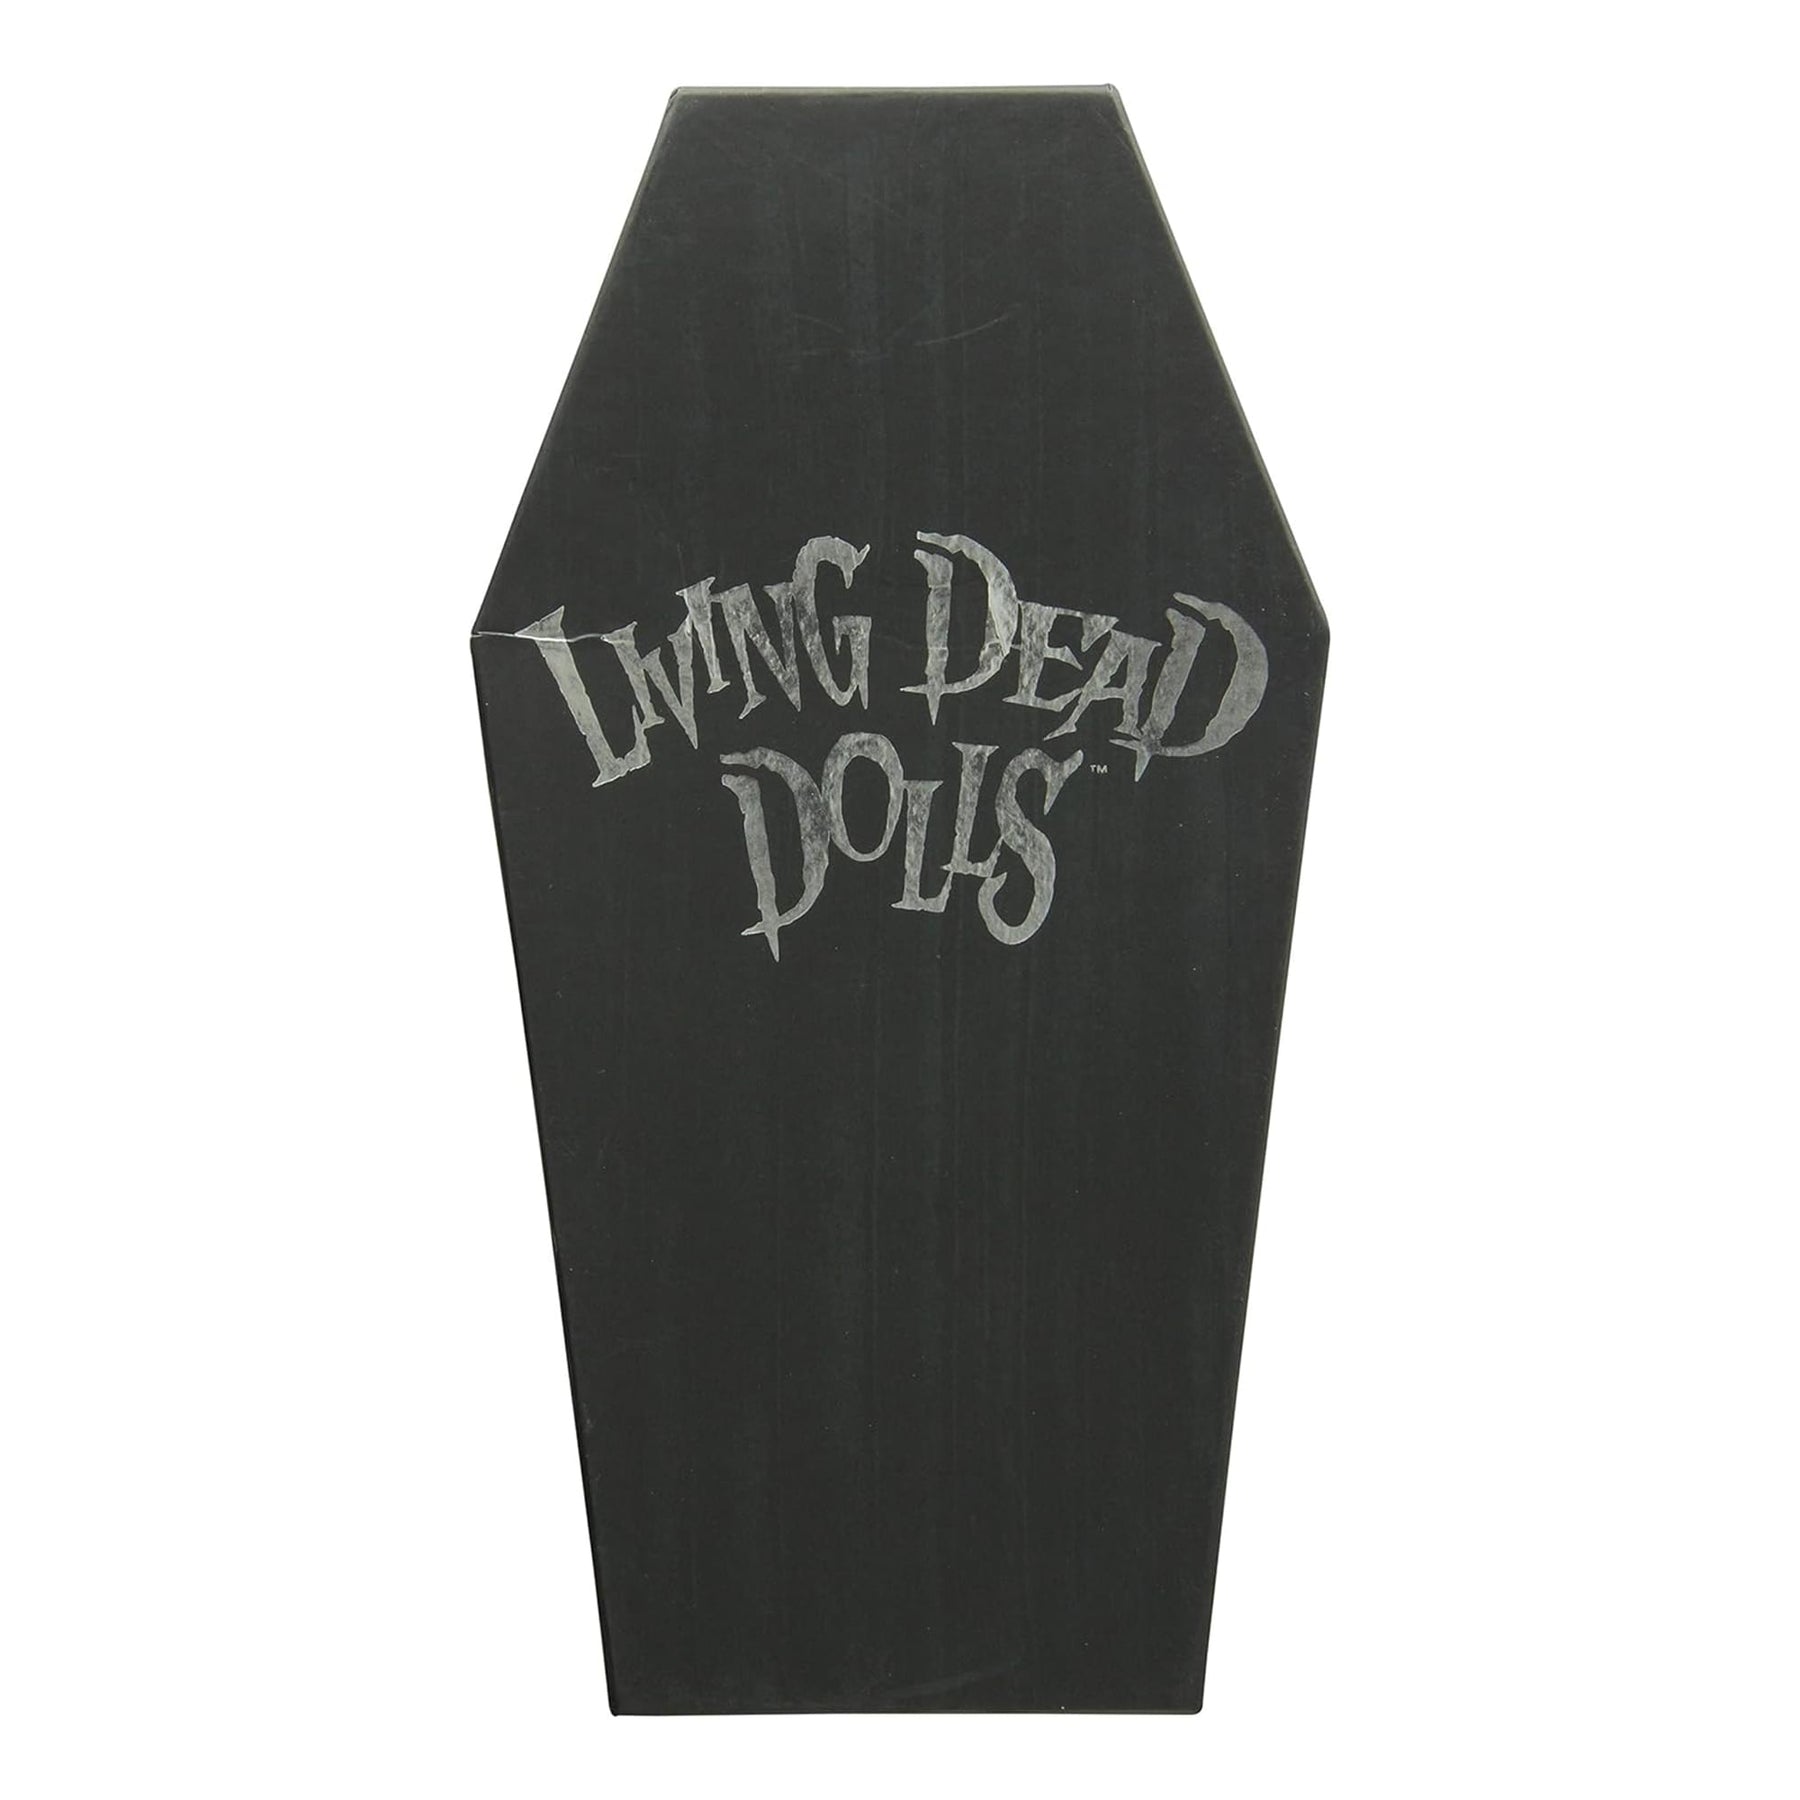 Living Dead Dolls Series 26 Doll Beltrane